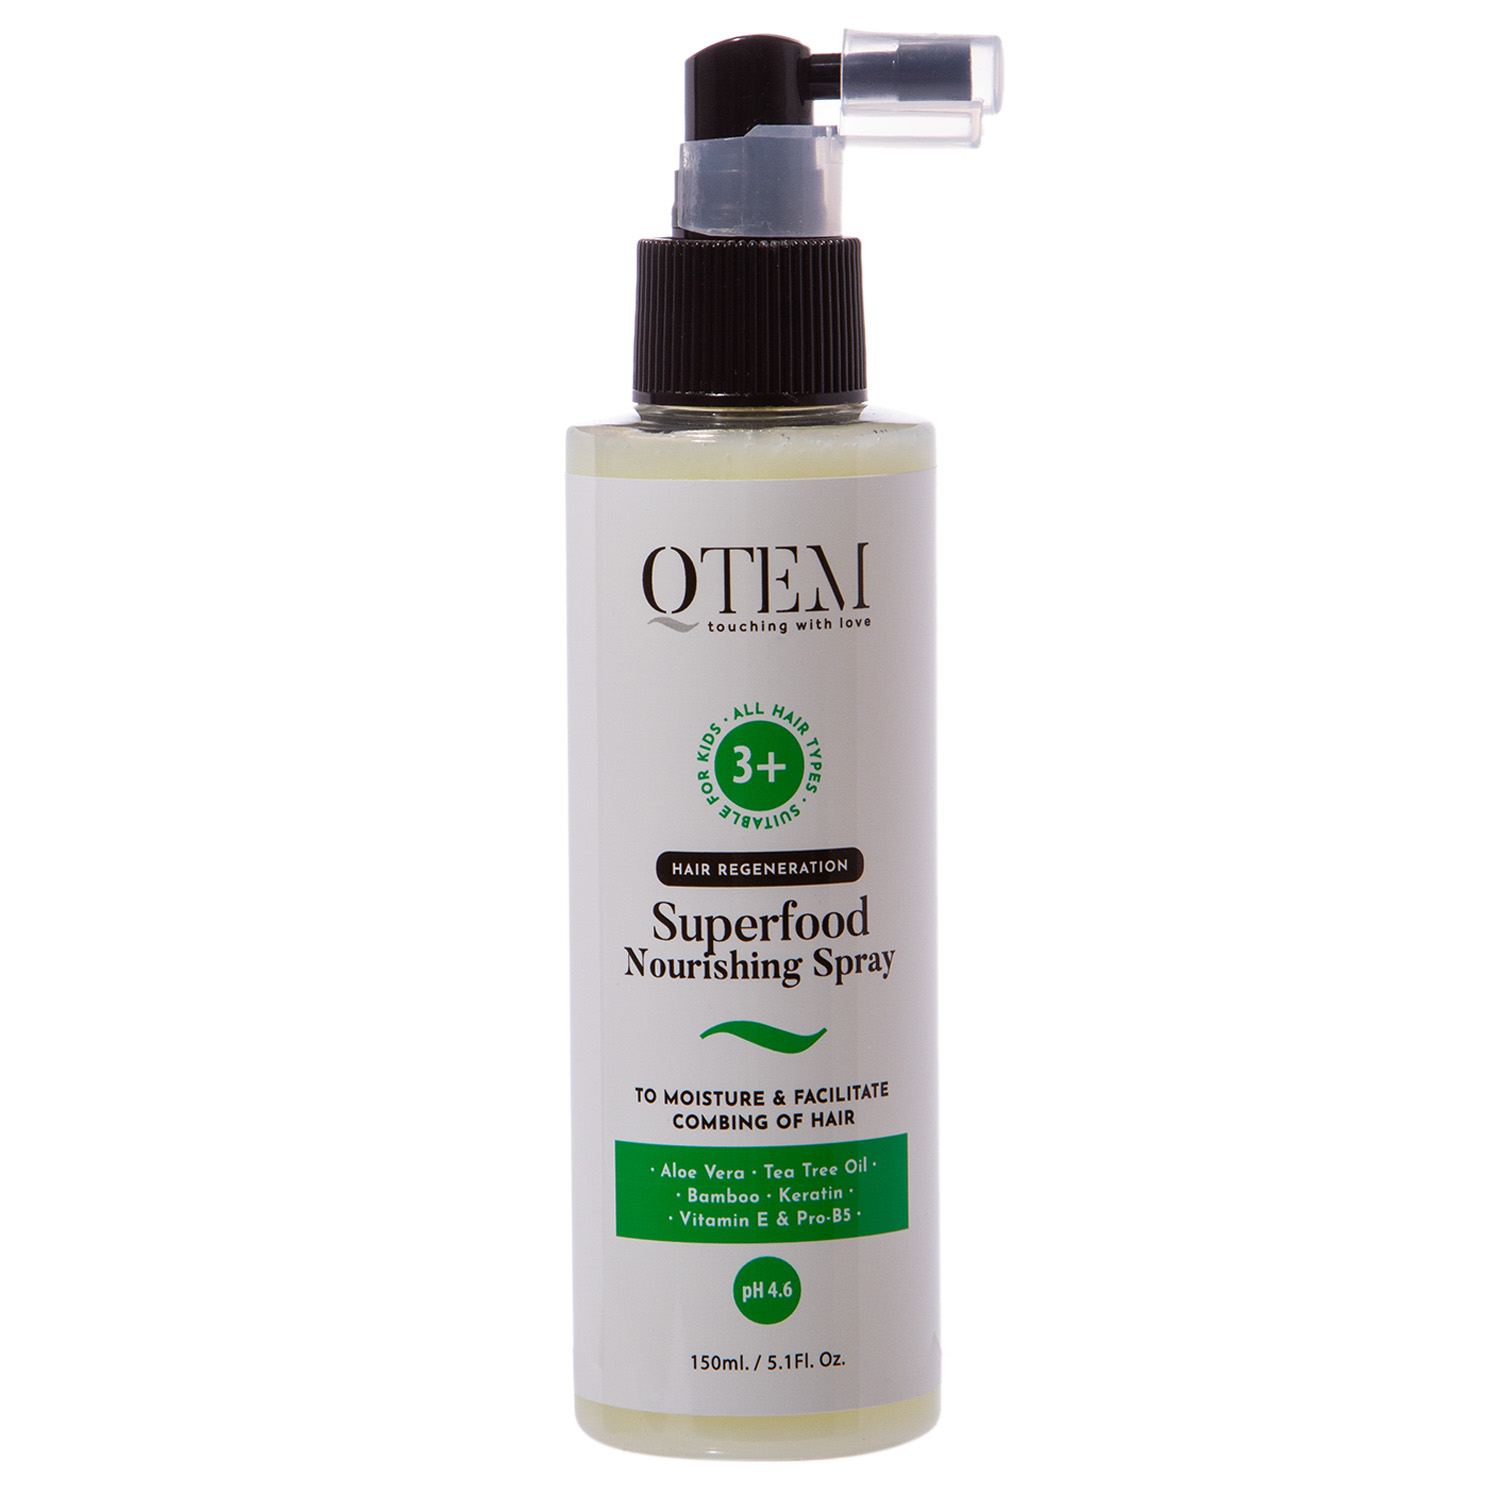 Qtem Детский питательный спрей для увлажнения и облегчения расчесывания, 150 мл (Qtem, Hair Regeneration)